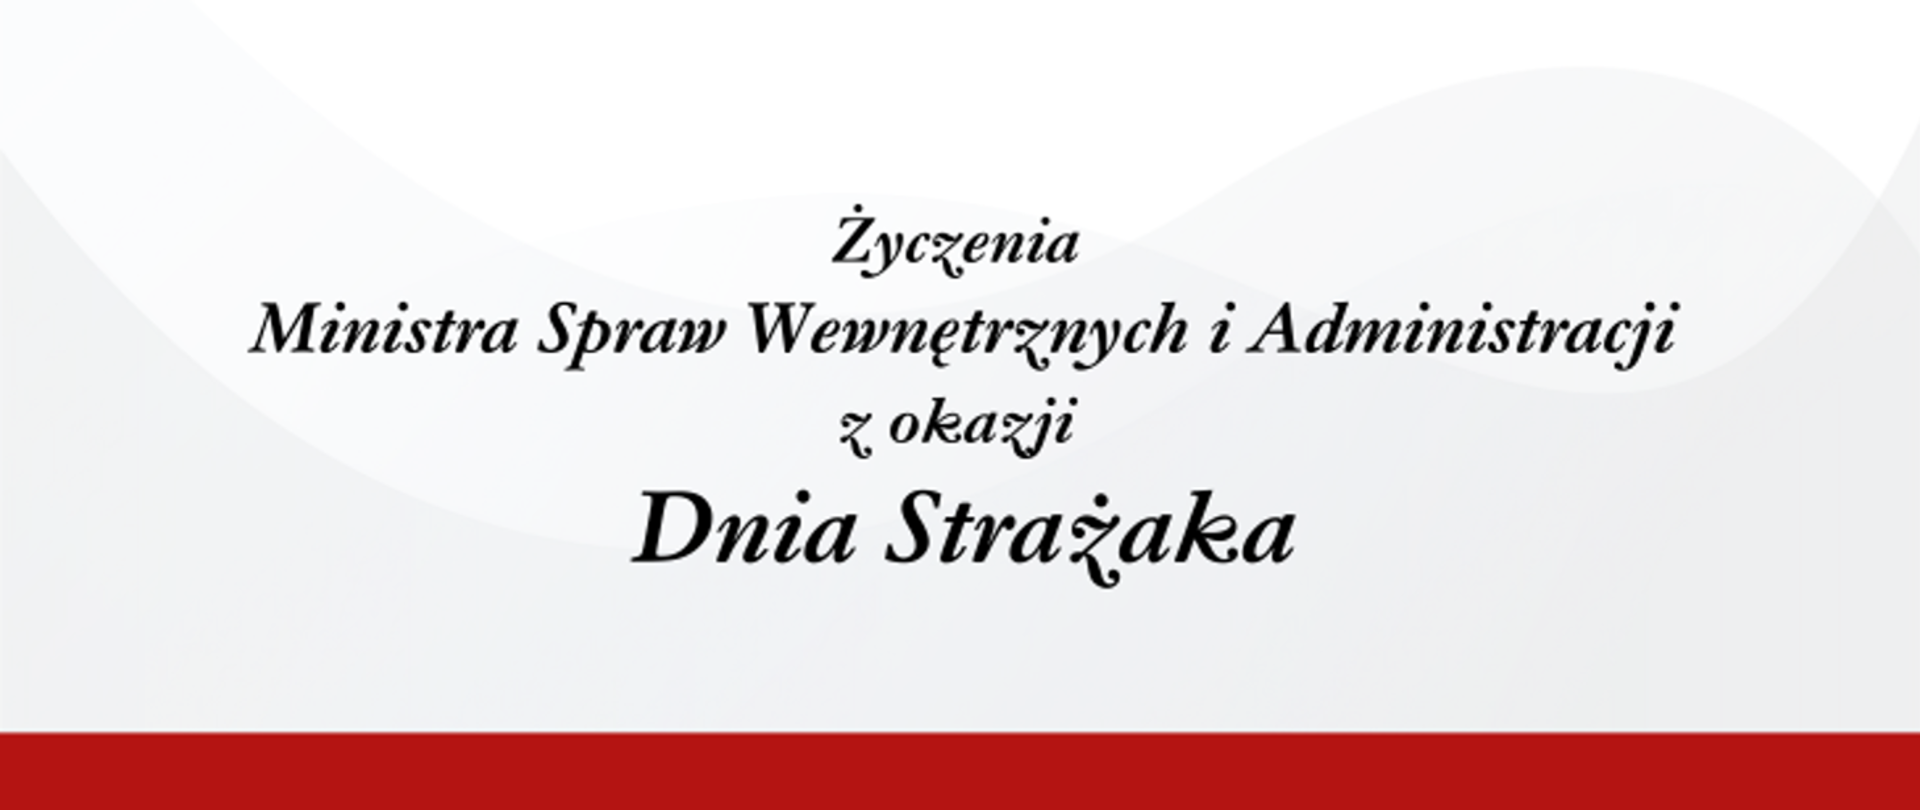 Na biało-szarym tle napis: "Życzenia Ministra Spraw Wewnętrznych i Administracji z okazji Dnia Strażaka.".